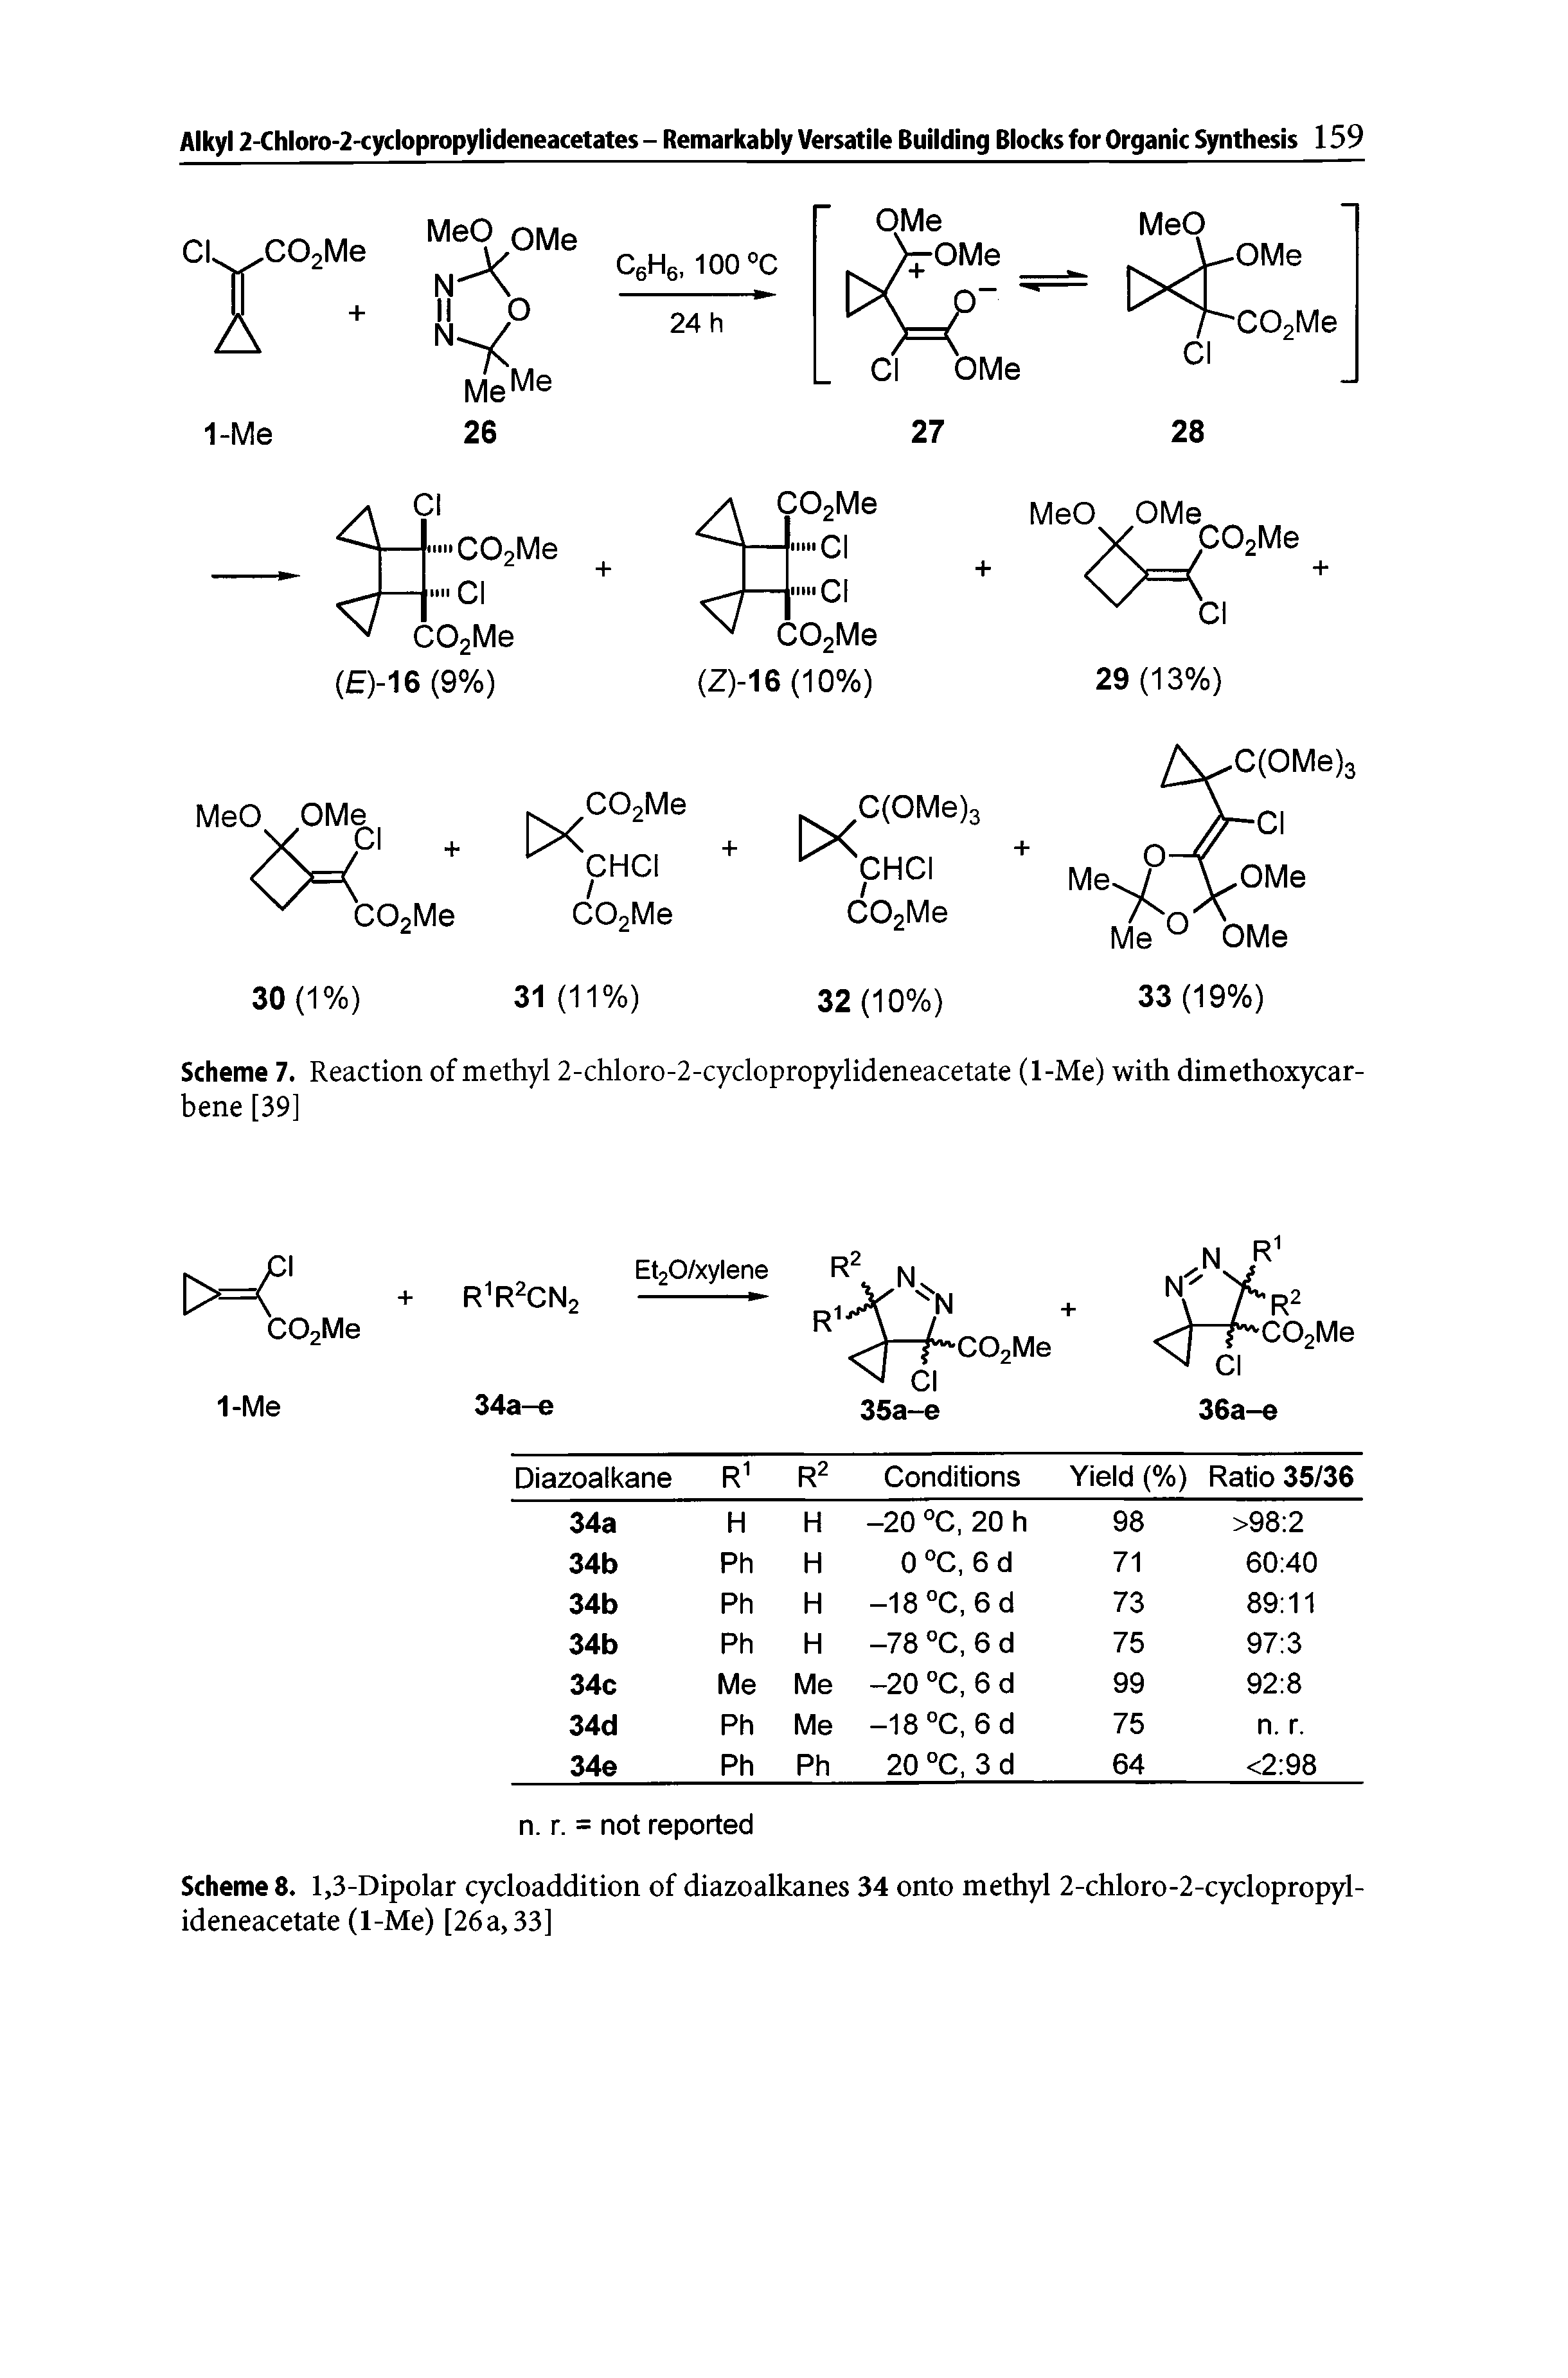 Scheme 8. 1,3-Dipolar cycloaddition of diazoalkanes 34 onto methyl 2-chloro-2-cyclopropyl-ideneacetate (1-Me) [26a, 33]...